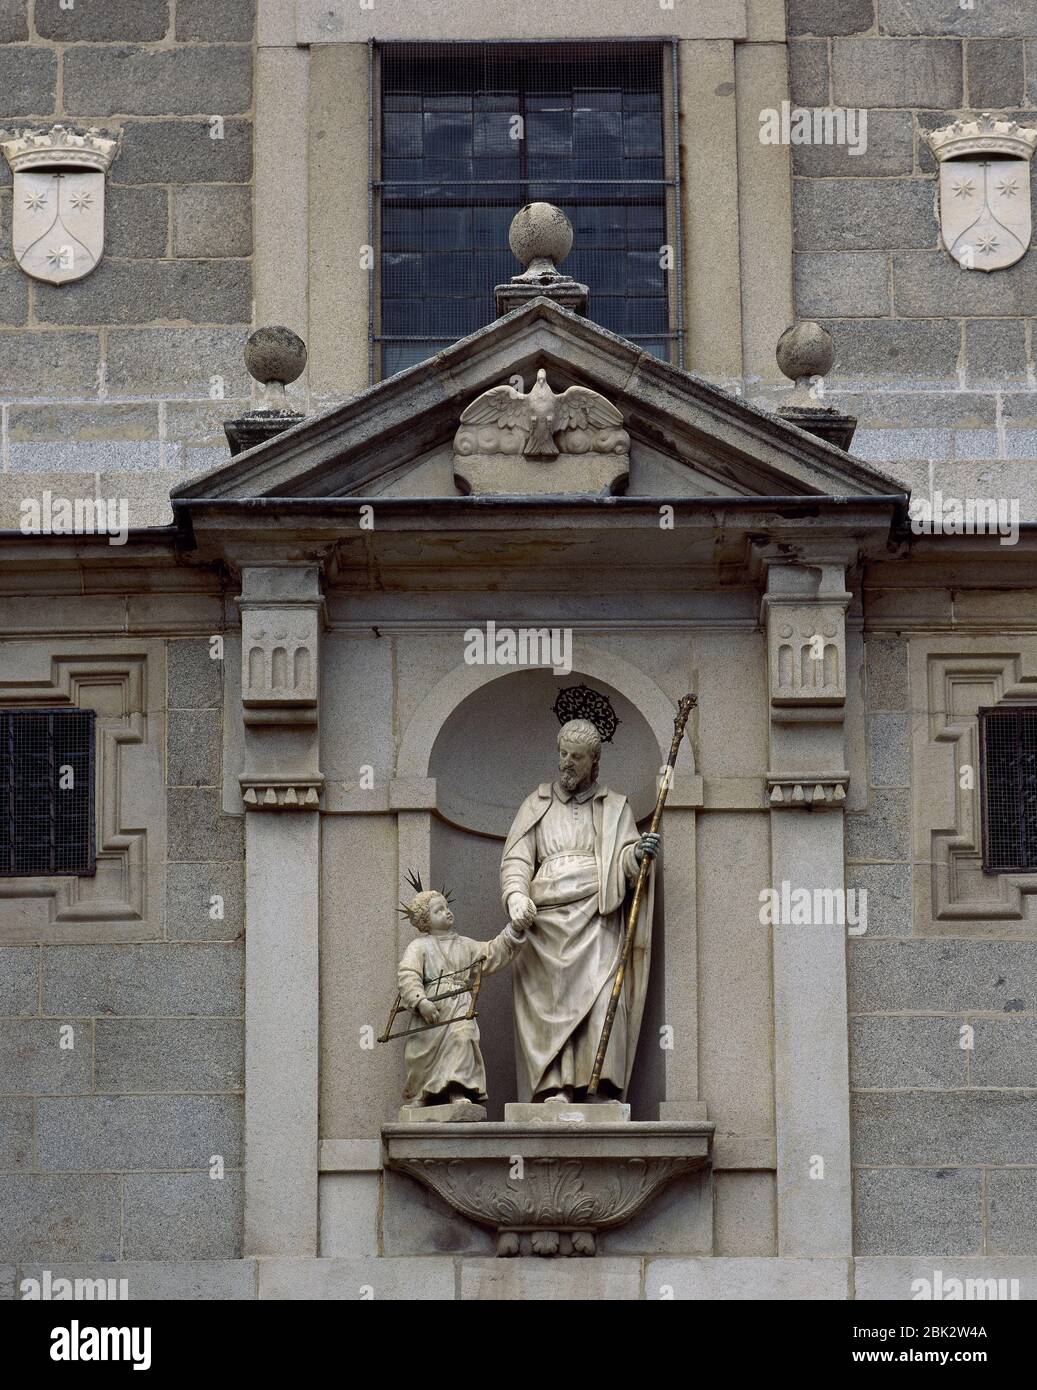 Saint Joseph with Christ Child. Ornamental statue by Giraldo di Merlo (1574-1620). Main facade. Convent of Saint Joseph. Avila, Castile and Leon, Spain. Stock Photo